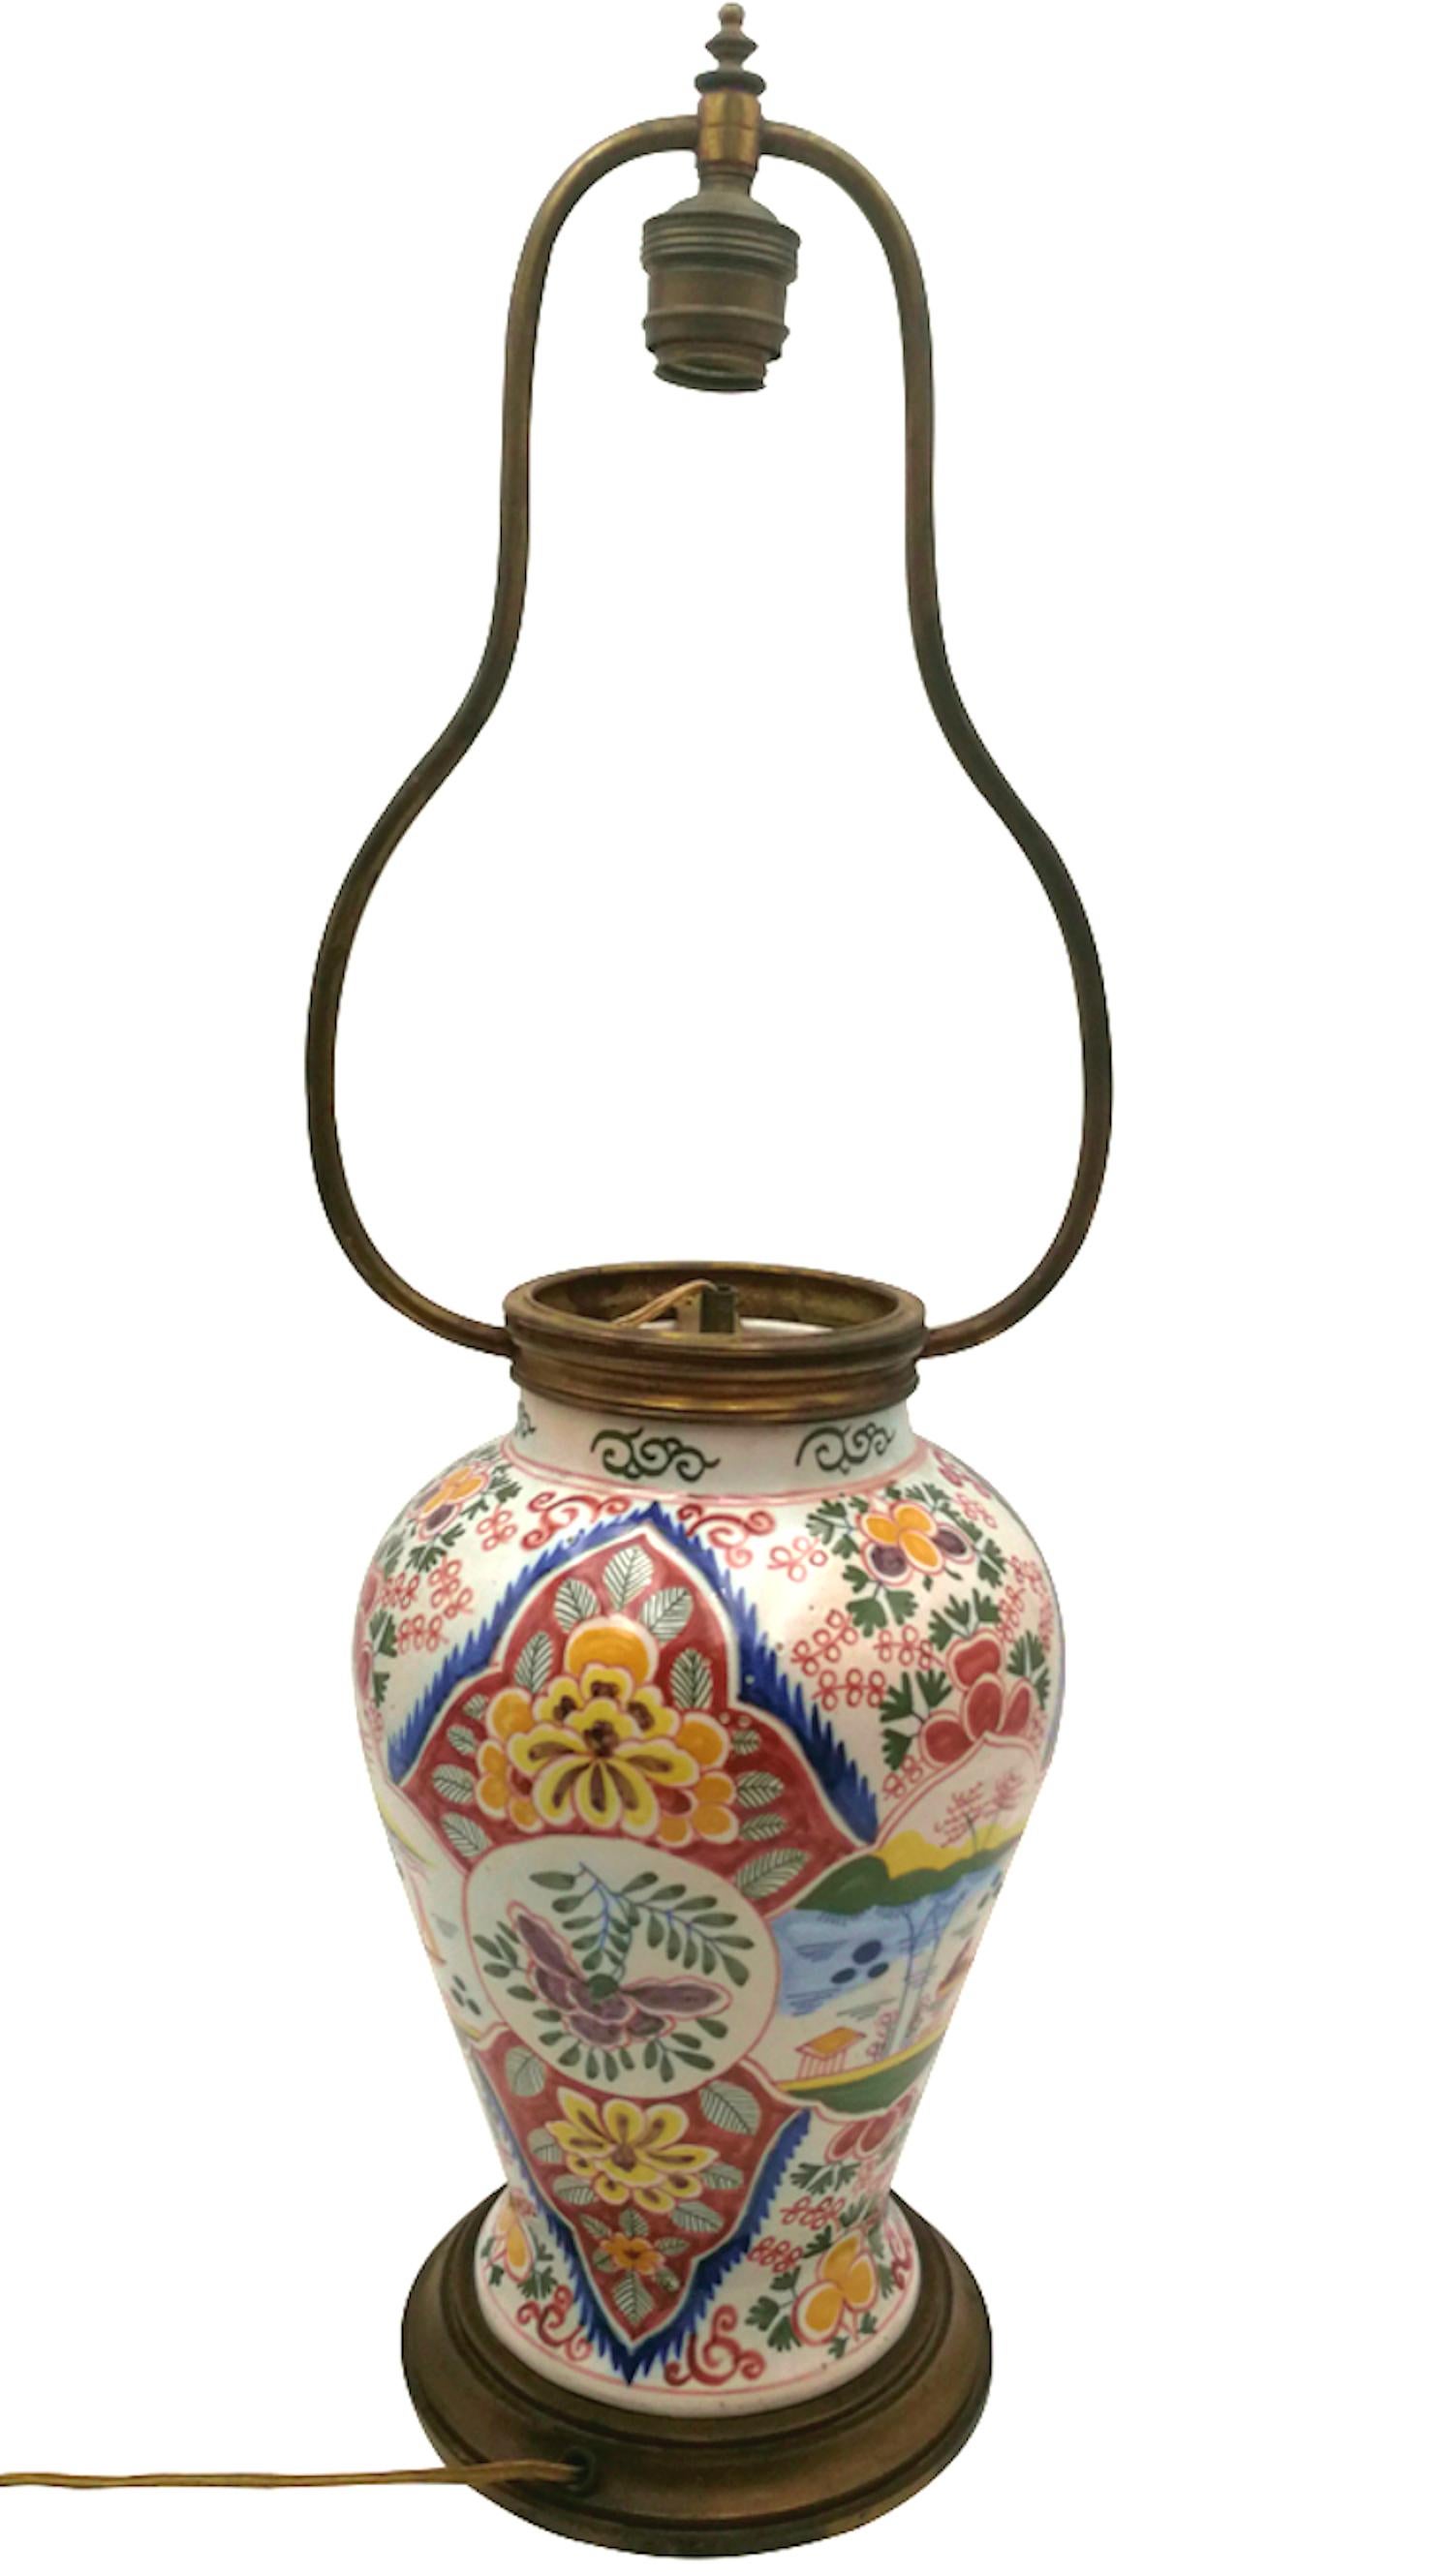 Eine Tischlampe auf einer handbemalten Delft-Vase aus dem frühen 20. Jahrhundert, verziert mit chinesischen
inspirierte Blumenmotive und eine Figur in einem Boot. Die breite Farbpalette ist ungewöhnlich für diese Art von
Keramik. Der Sockel und